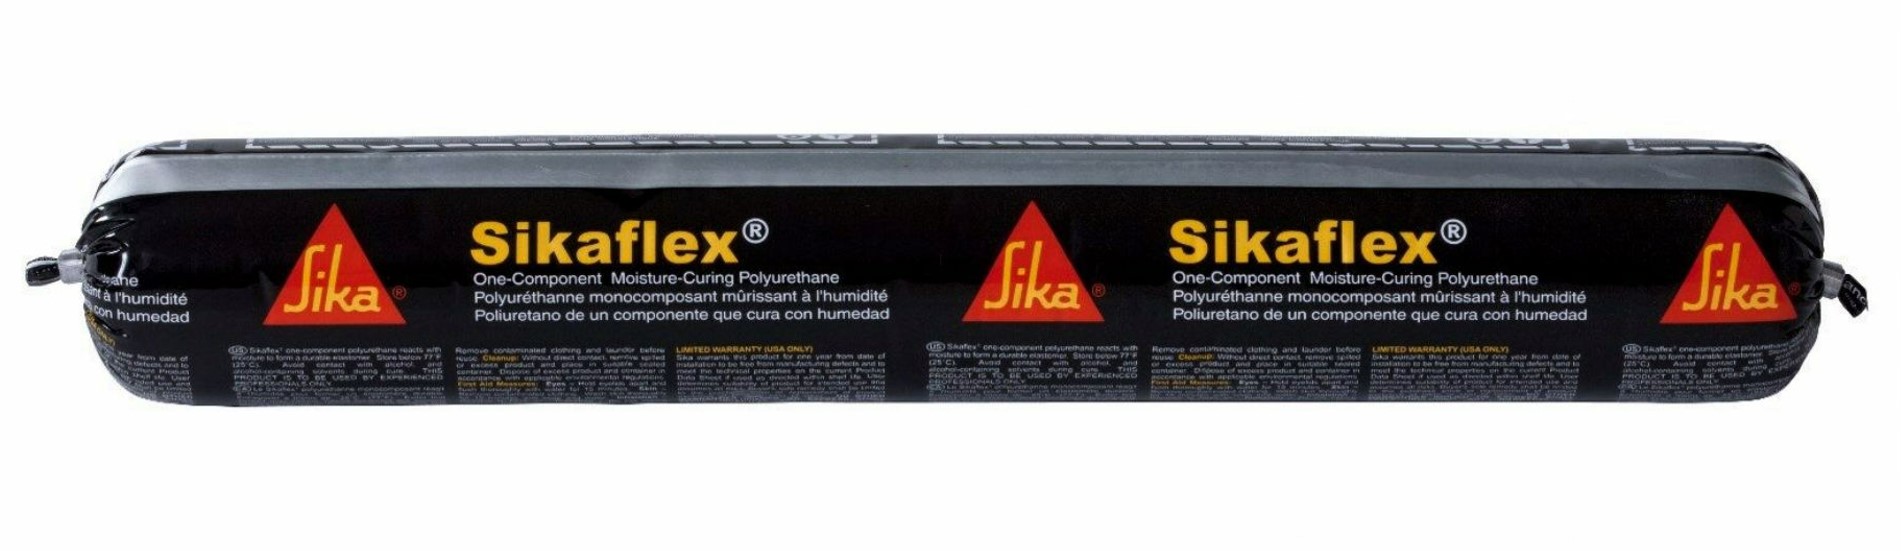 Sikaflex 221 schwarz 600ml Beutel Klebstoff Dichtmasse